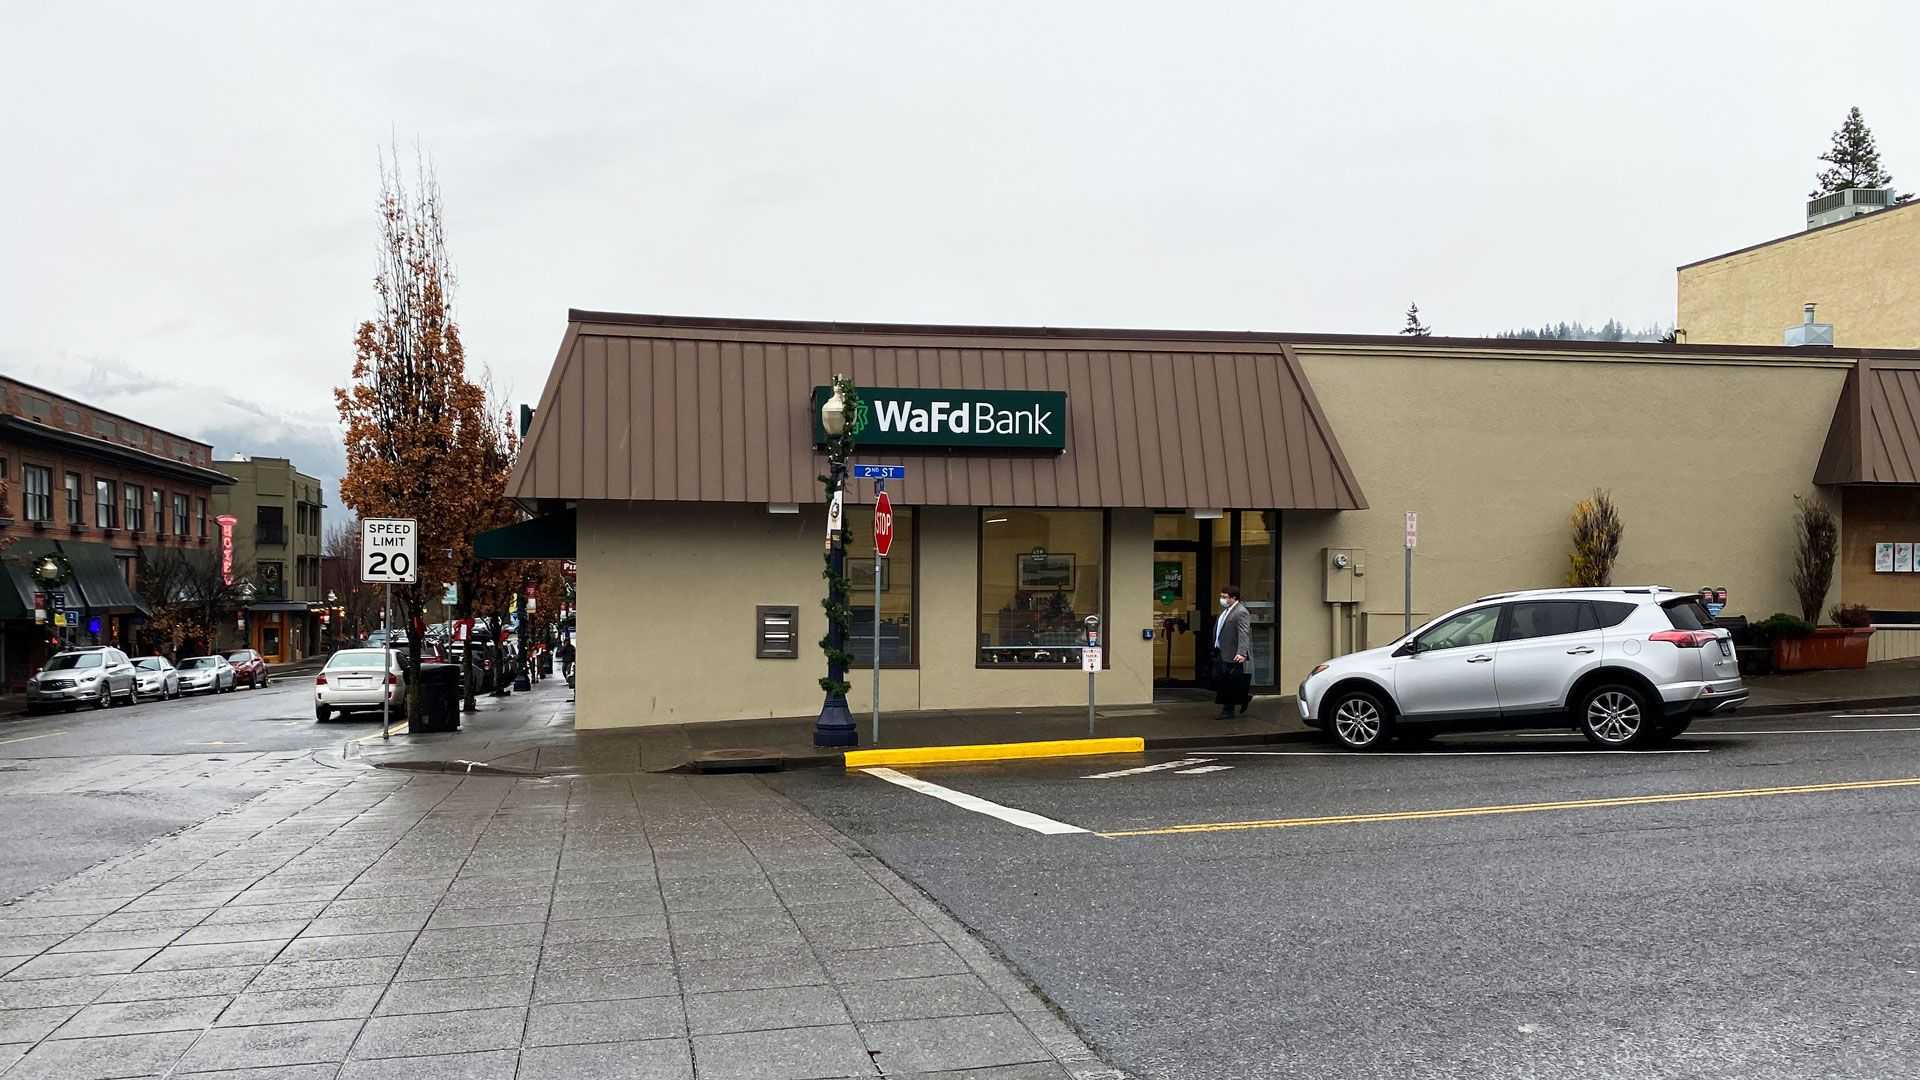 WaFd Bank in Hood River, Oregon #1325 - Washington Federal.